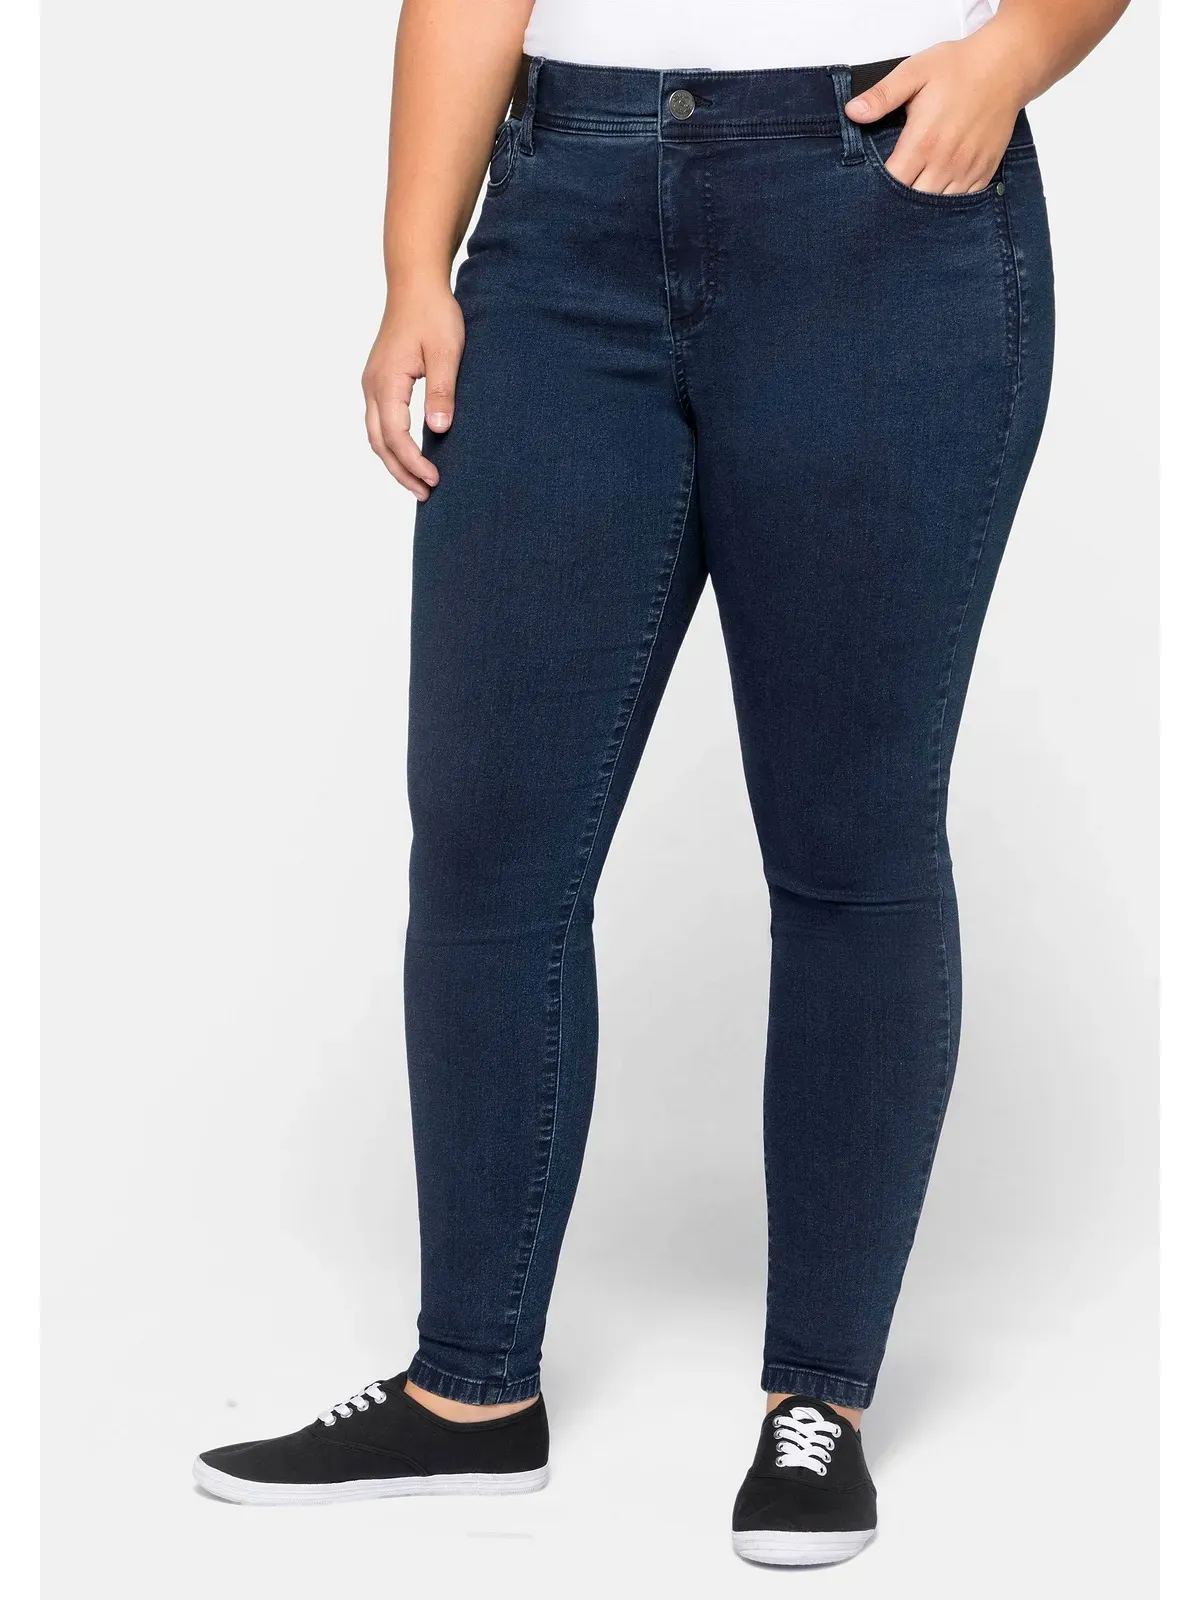 Stretch-Jeans SHEEGO "Große Größen" Gr. 2, Normalgrößen, blau (dark blue denim) Damen Jeans Stretch »Die Skinny«, wächst bis zu 3 Gr. mit